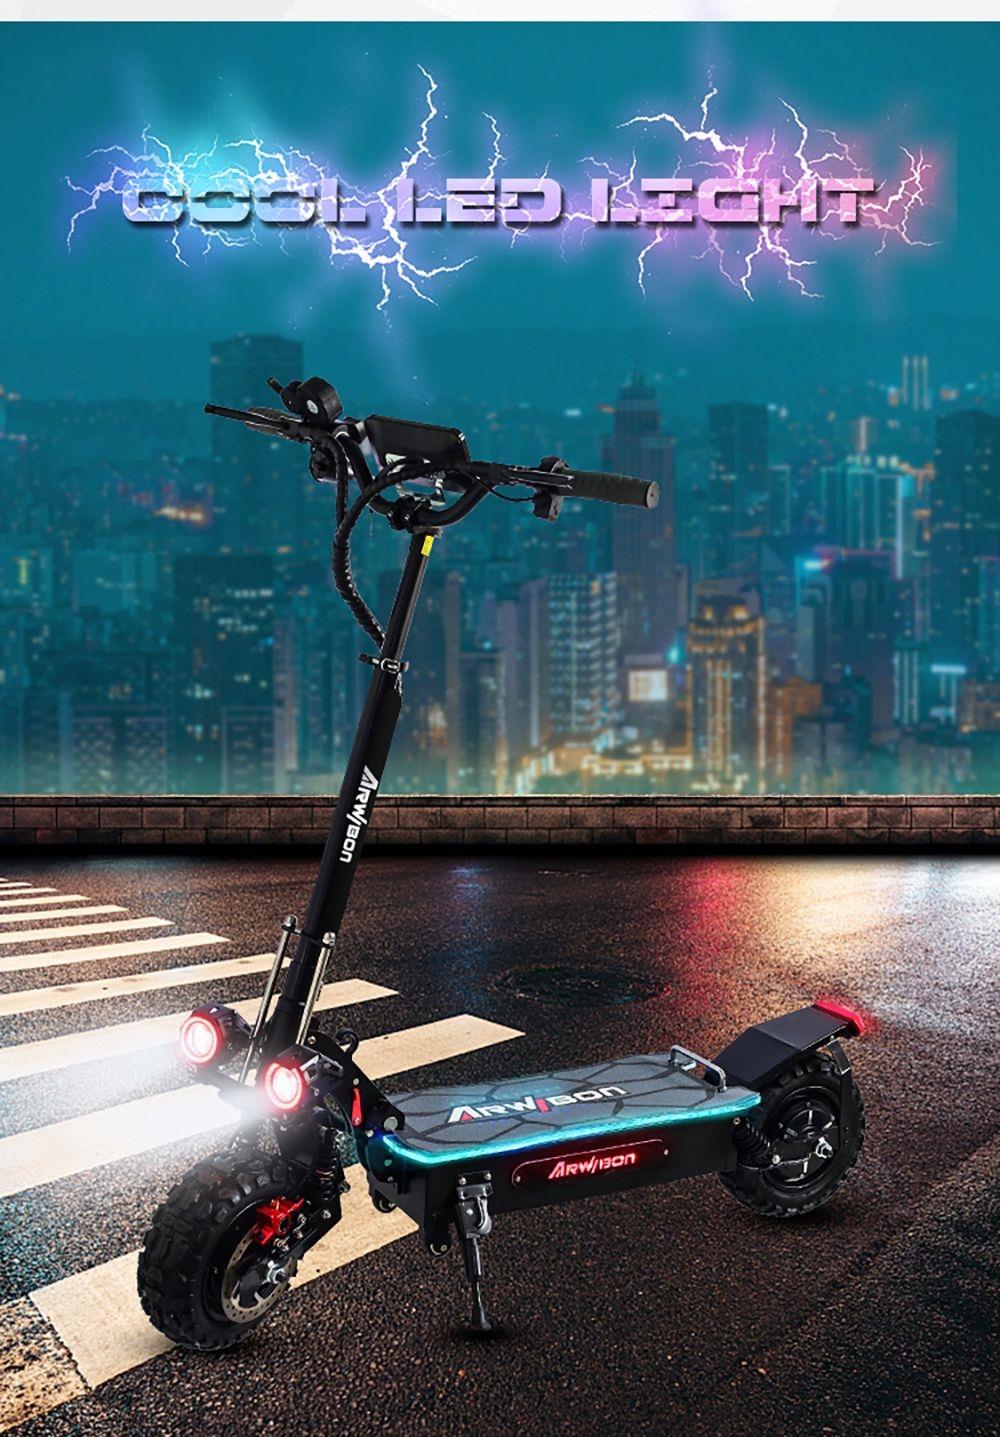 ARWIBON Q06 Pro 11 inch Off-road banden elektrische scooter, 2800W dubbele motor, 75 km / h Max snelheid, 27Ah batterij